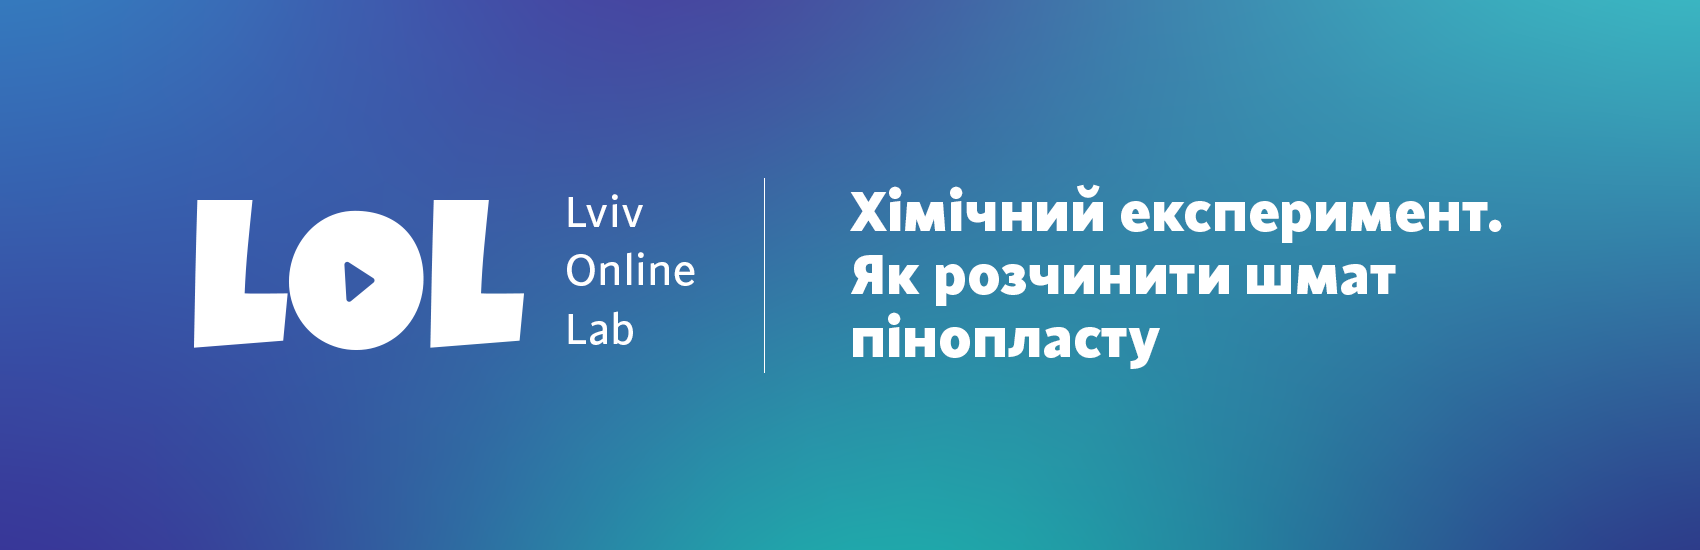 Як "знищити" коронавірус. Експеримент з пінопластом та ацетоном | Lviv Online Lab